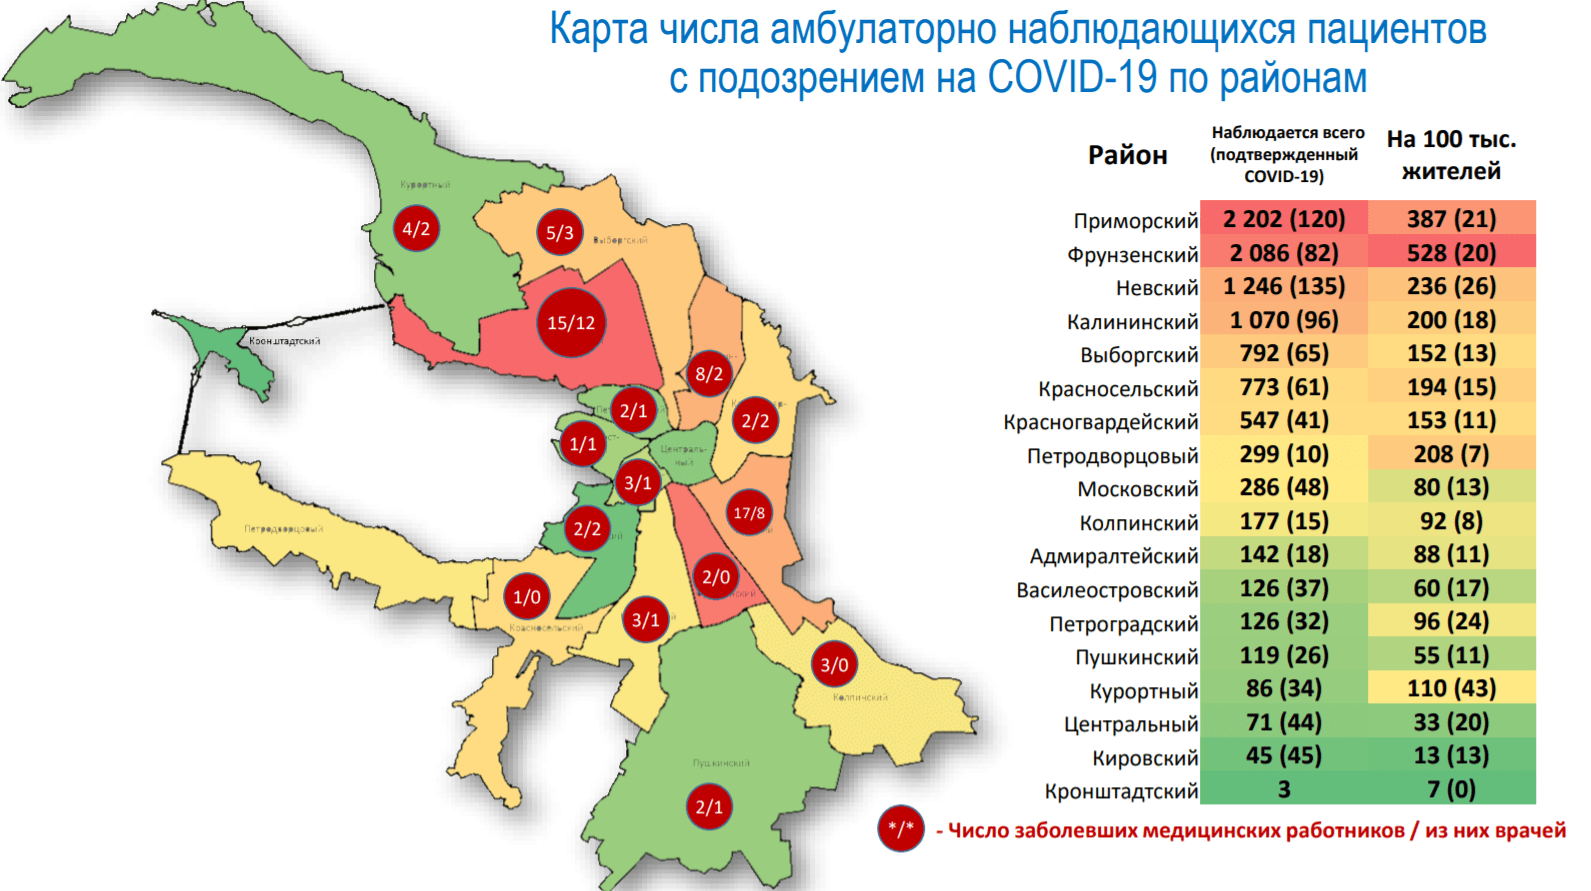 Зеленые районы спб. Районы Санкт-Петербурга. Карта СПБ по районам. Самый большой район СПБ. Карта коронавируса СПБ по районам.